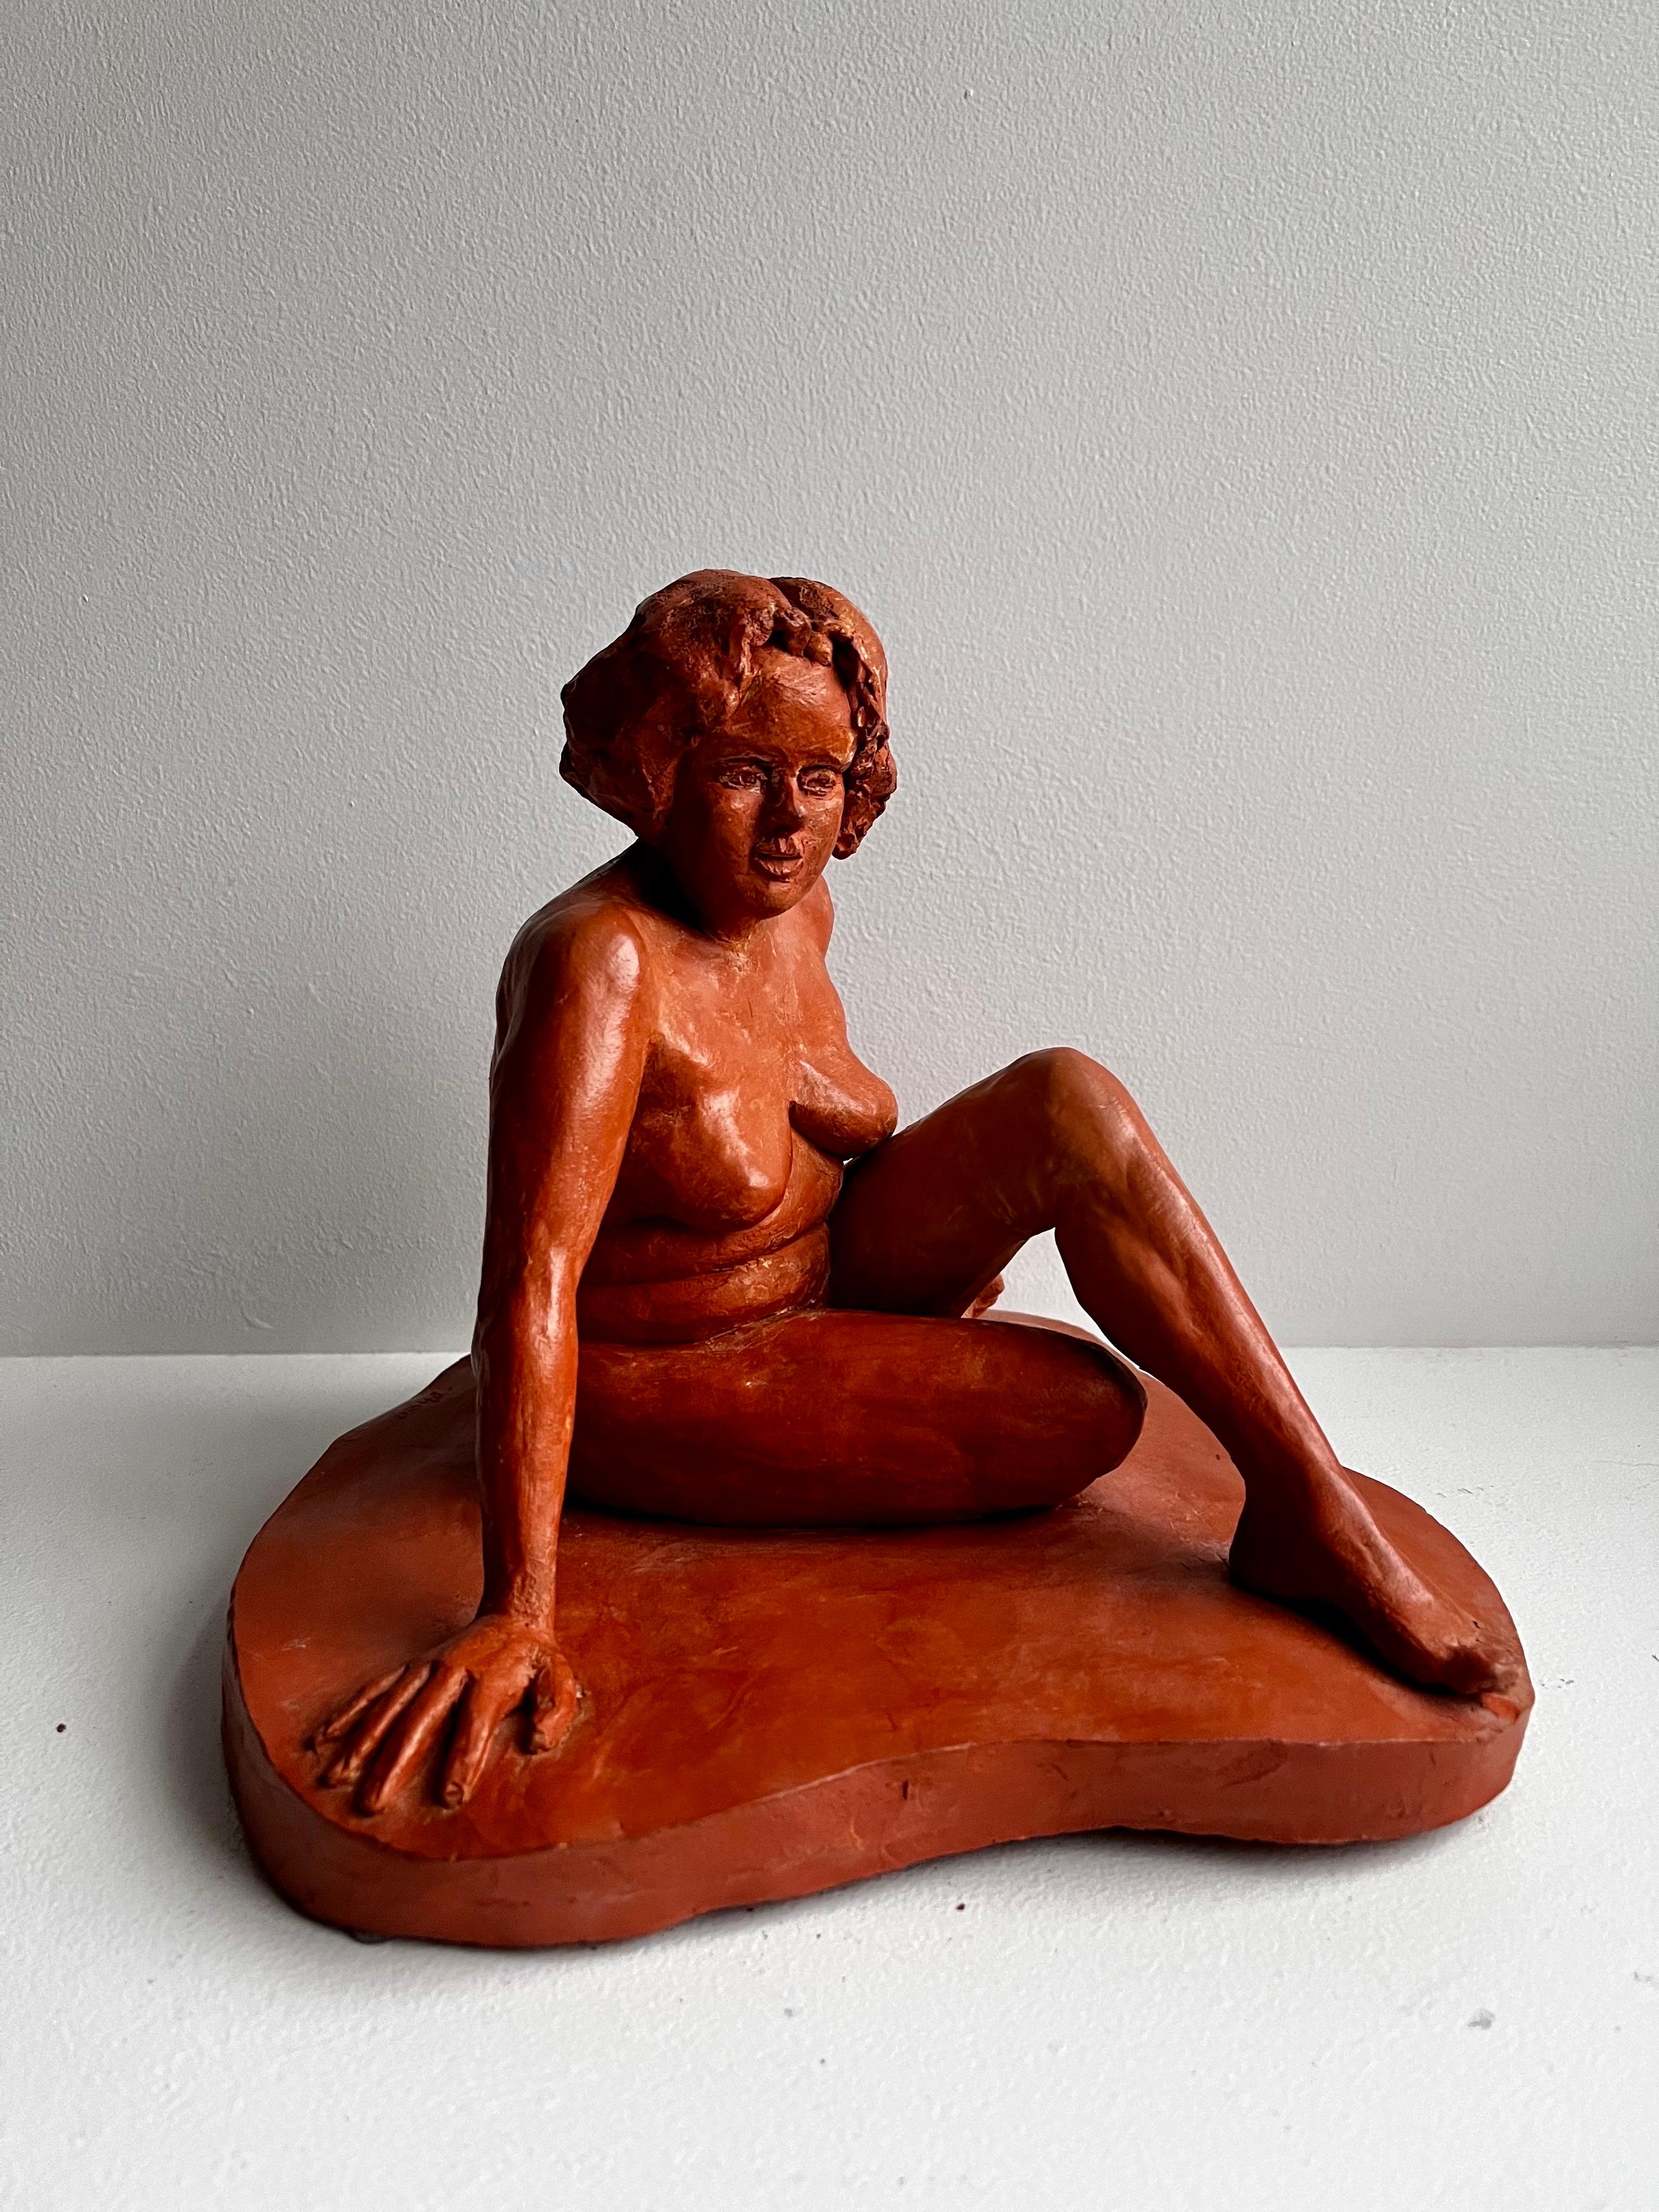 Sculpture en terre cuite rouge représentant un nu assis
vers 1960
signé - artiste inconnu 

belle couleur et taille
petit éclat près du pied